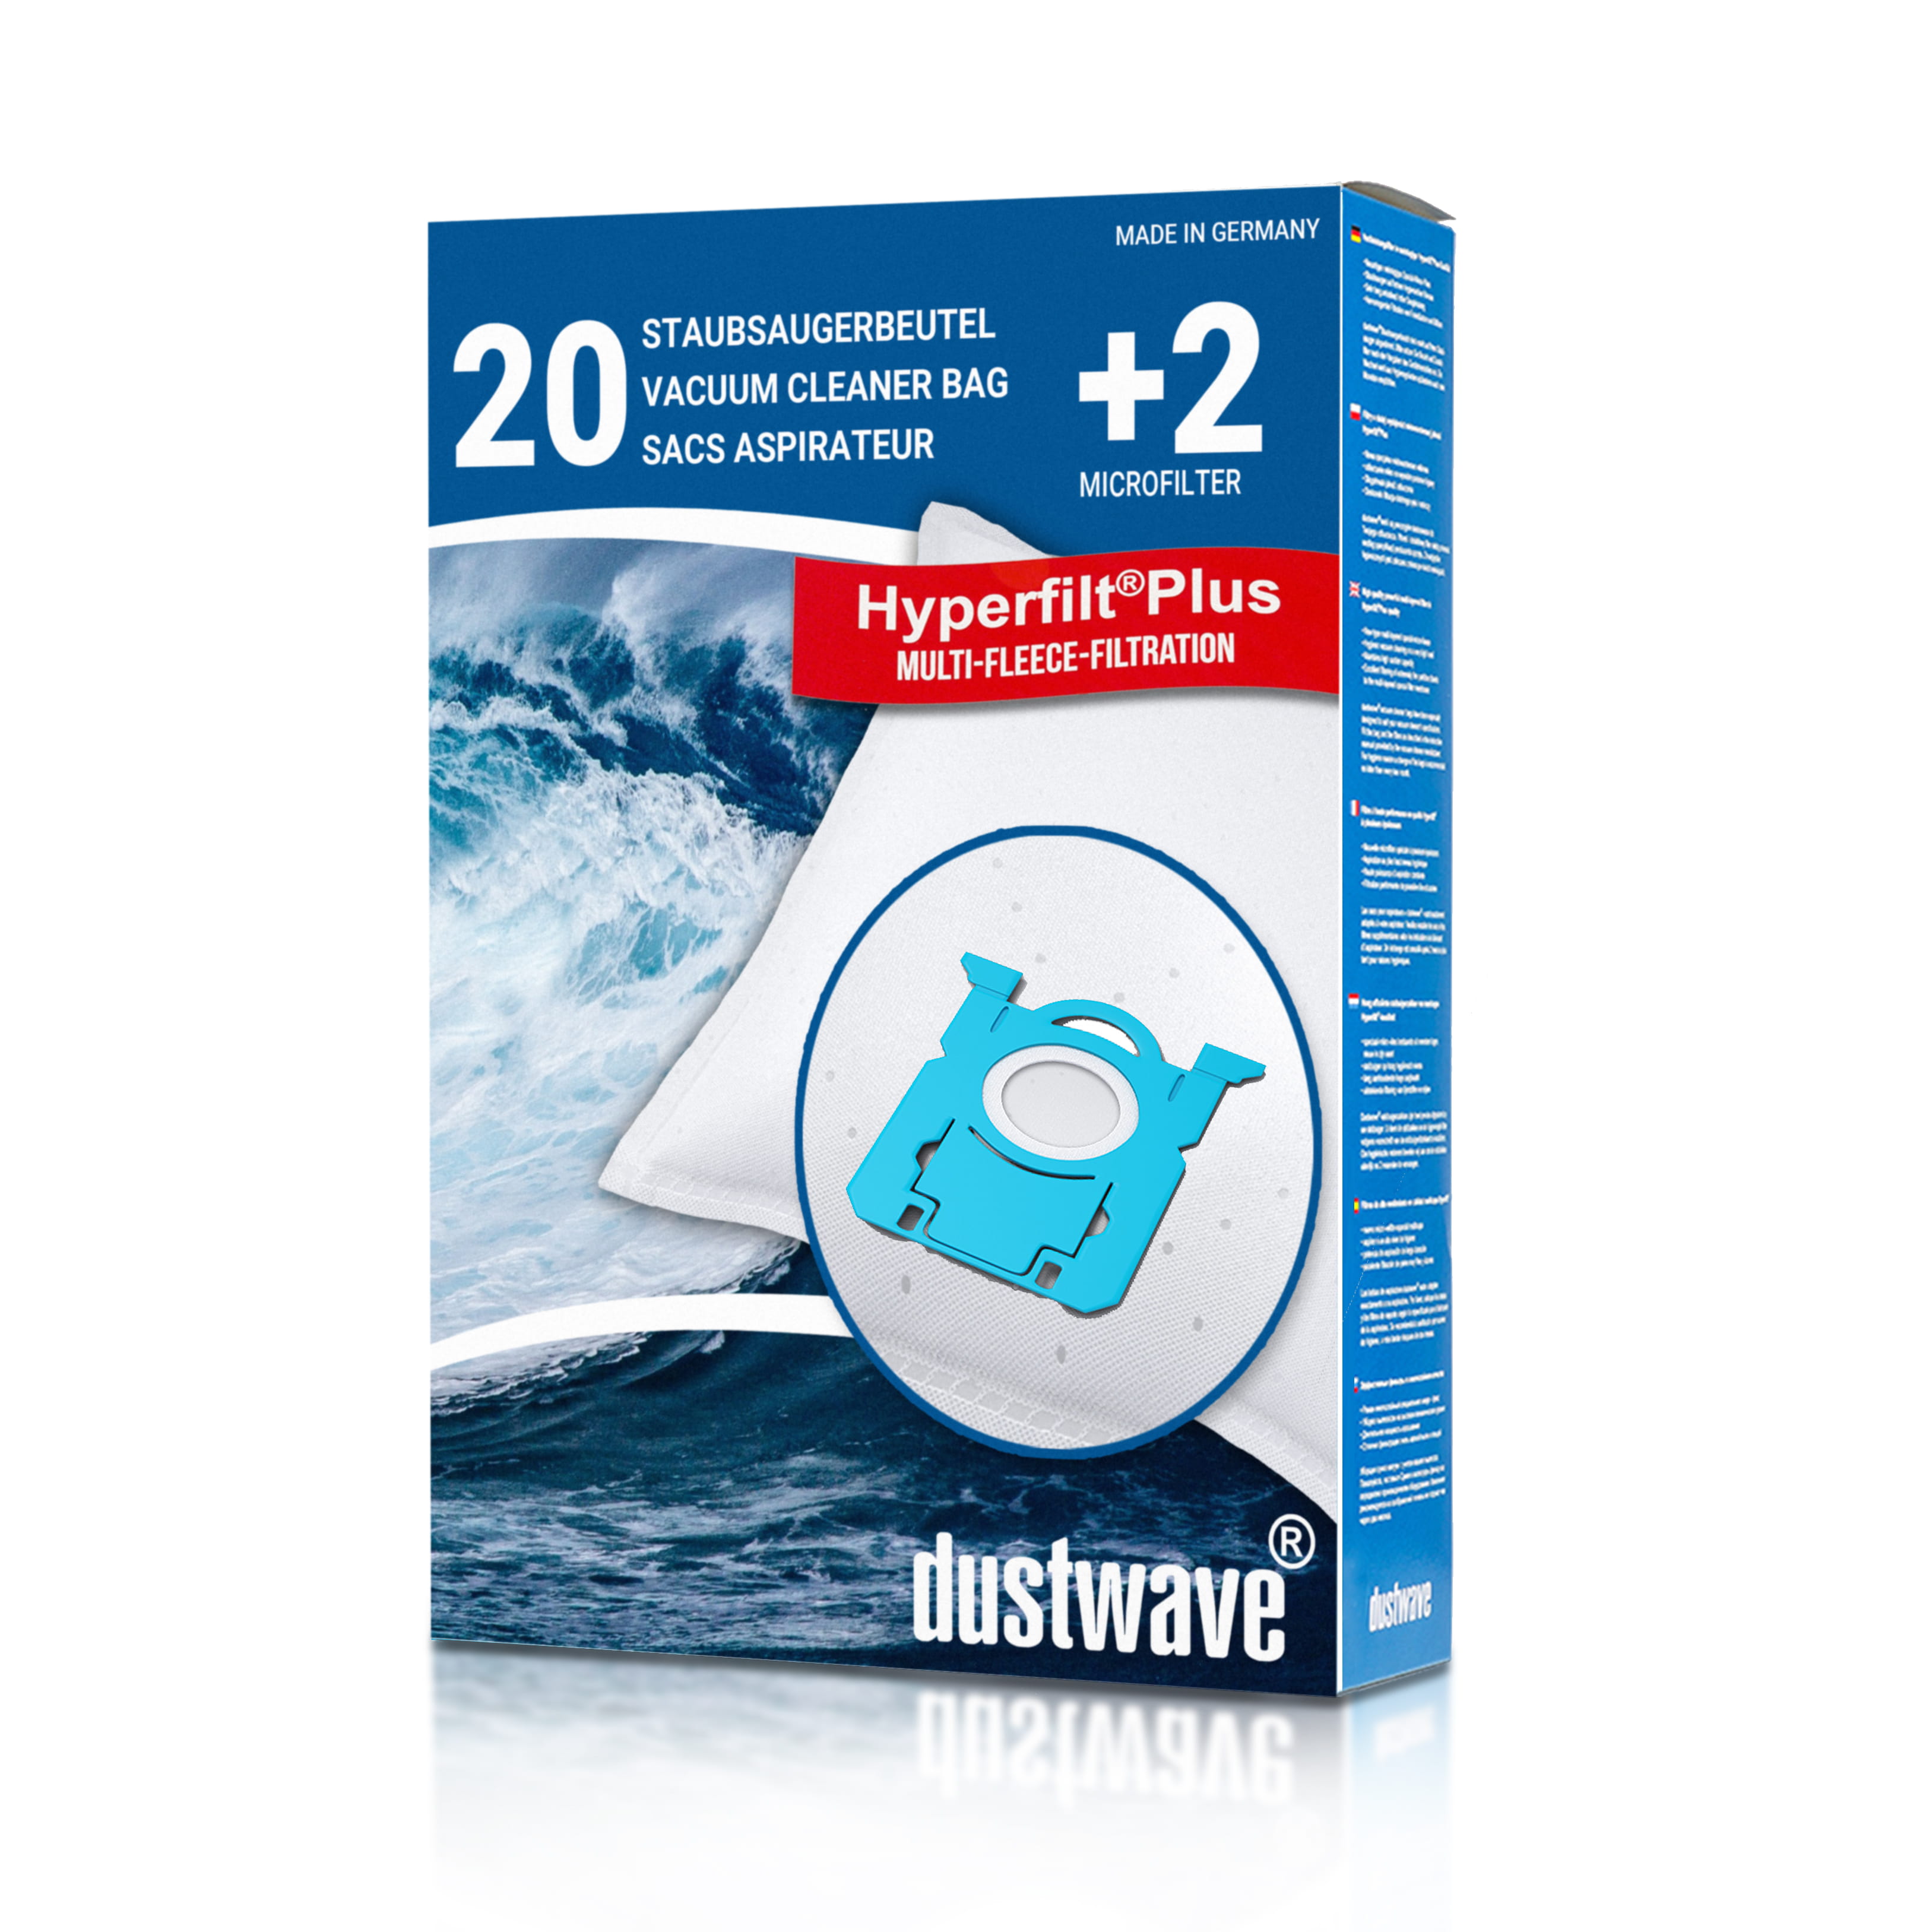 Dustwave® 10 Staubsaugerbeutel für Collo 335 - hocheffizient mit Hygieneverschluss - Made in Germany